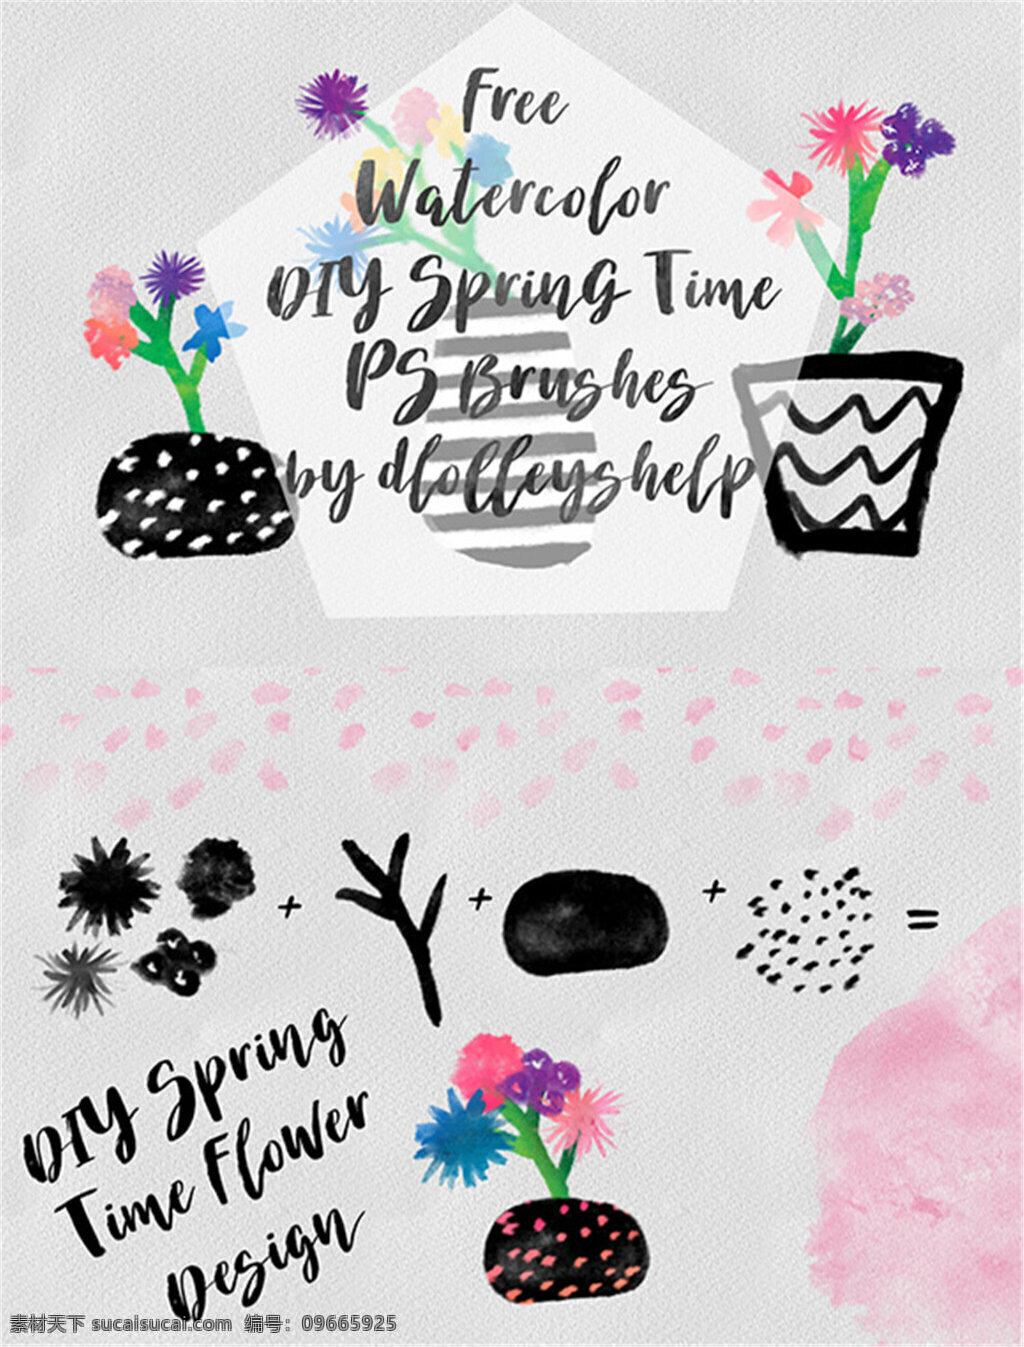 水彩 水墨 画笔 系列 ps 笔刷 花朵 花盆 笔刷预设